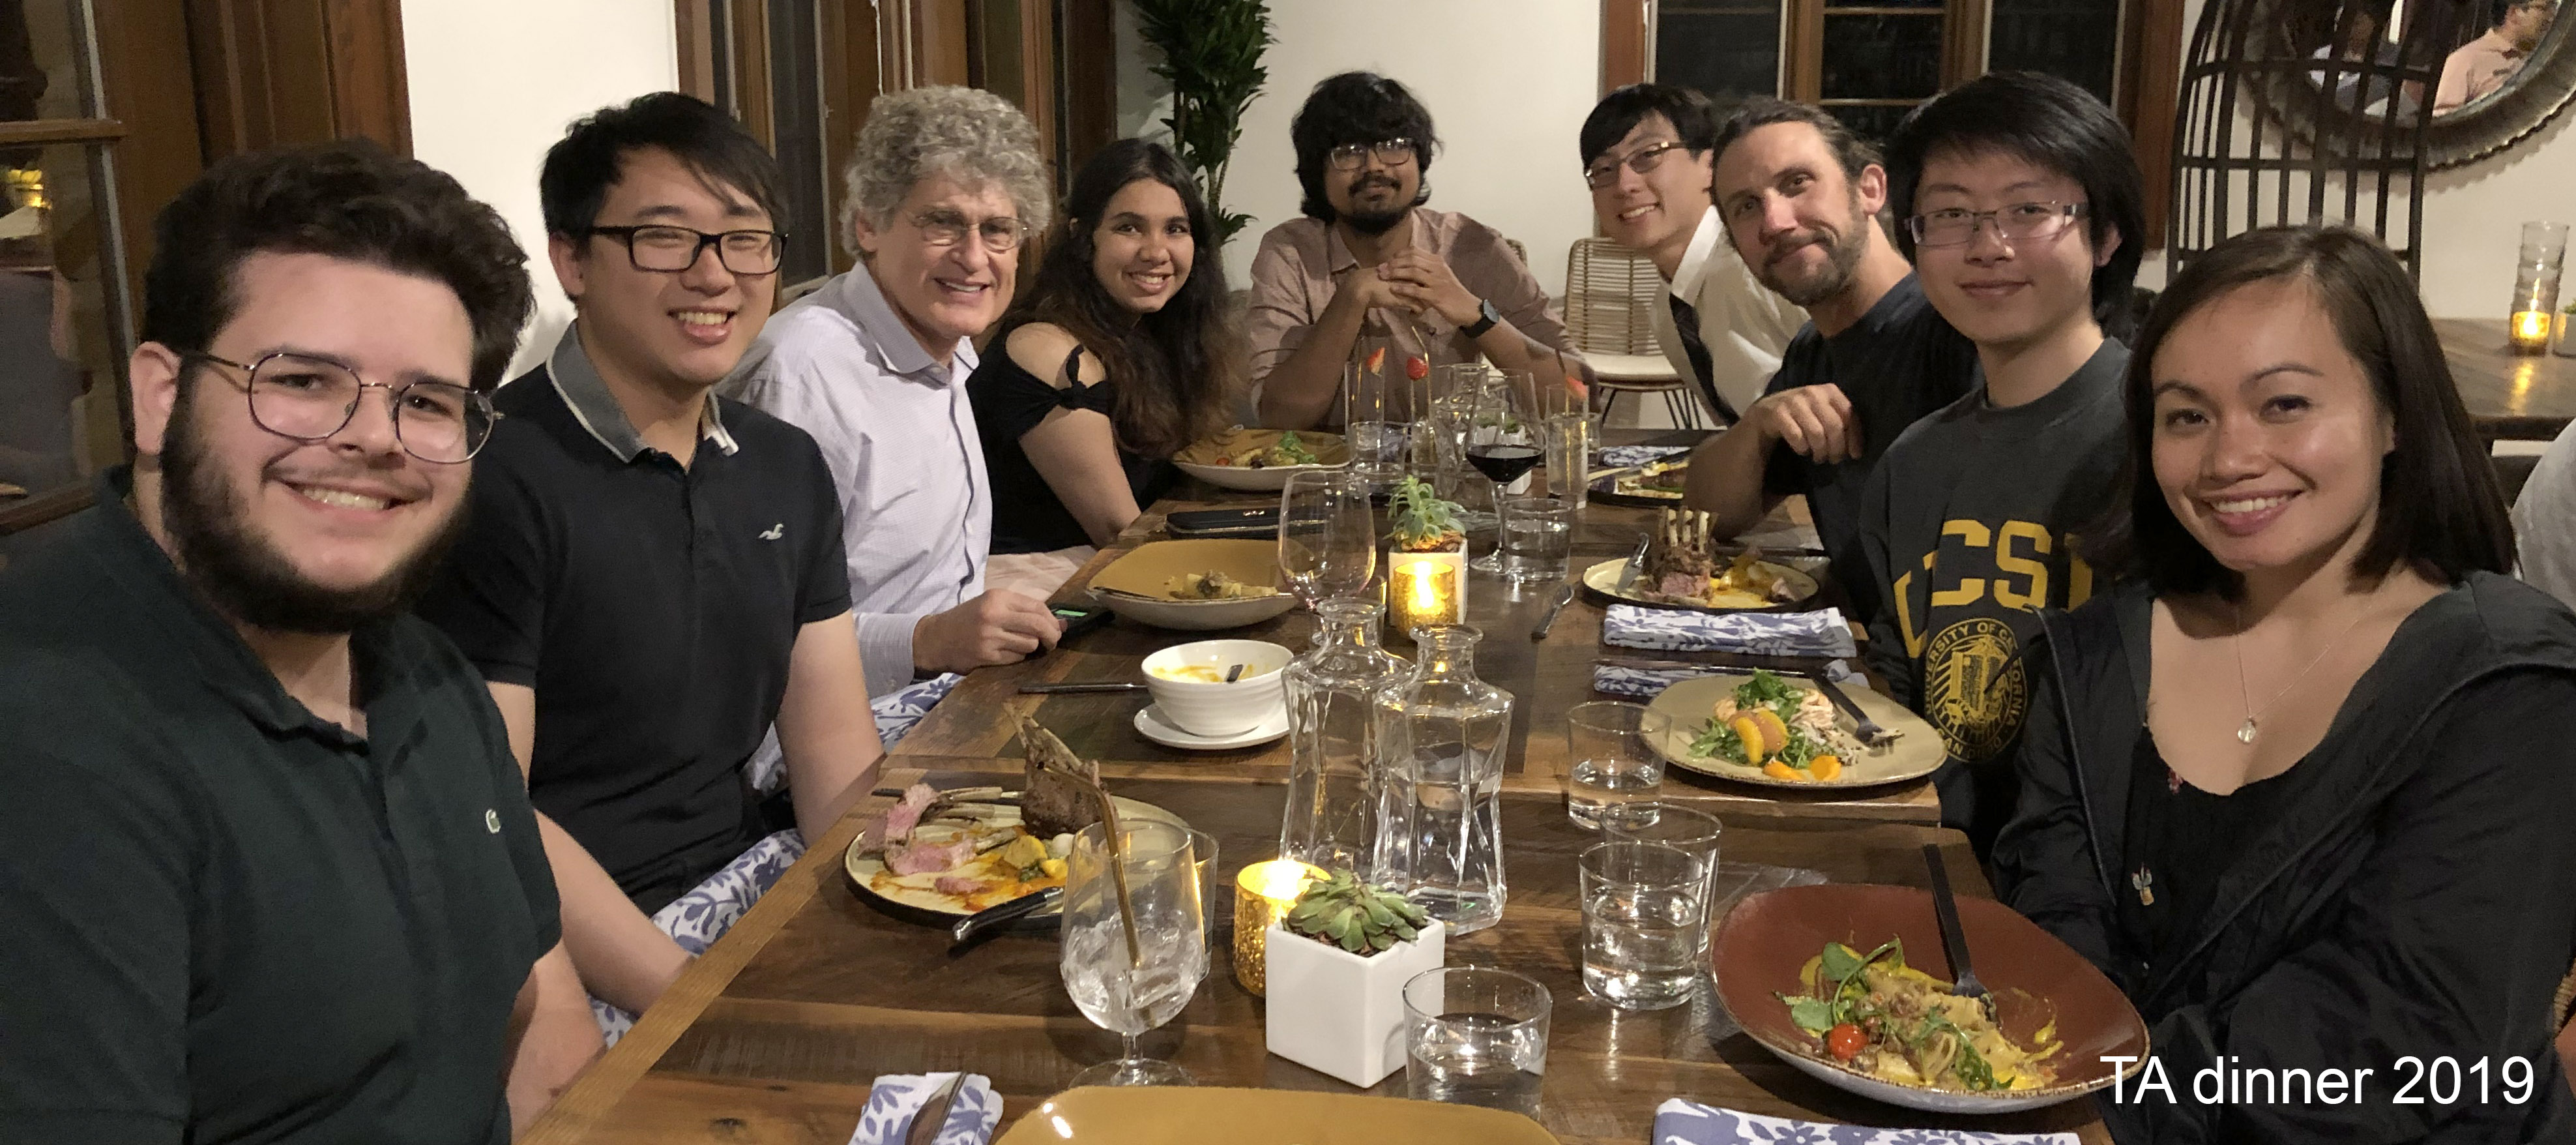 2019 TA dinner at Estancia